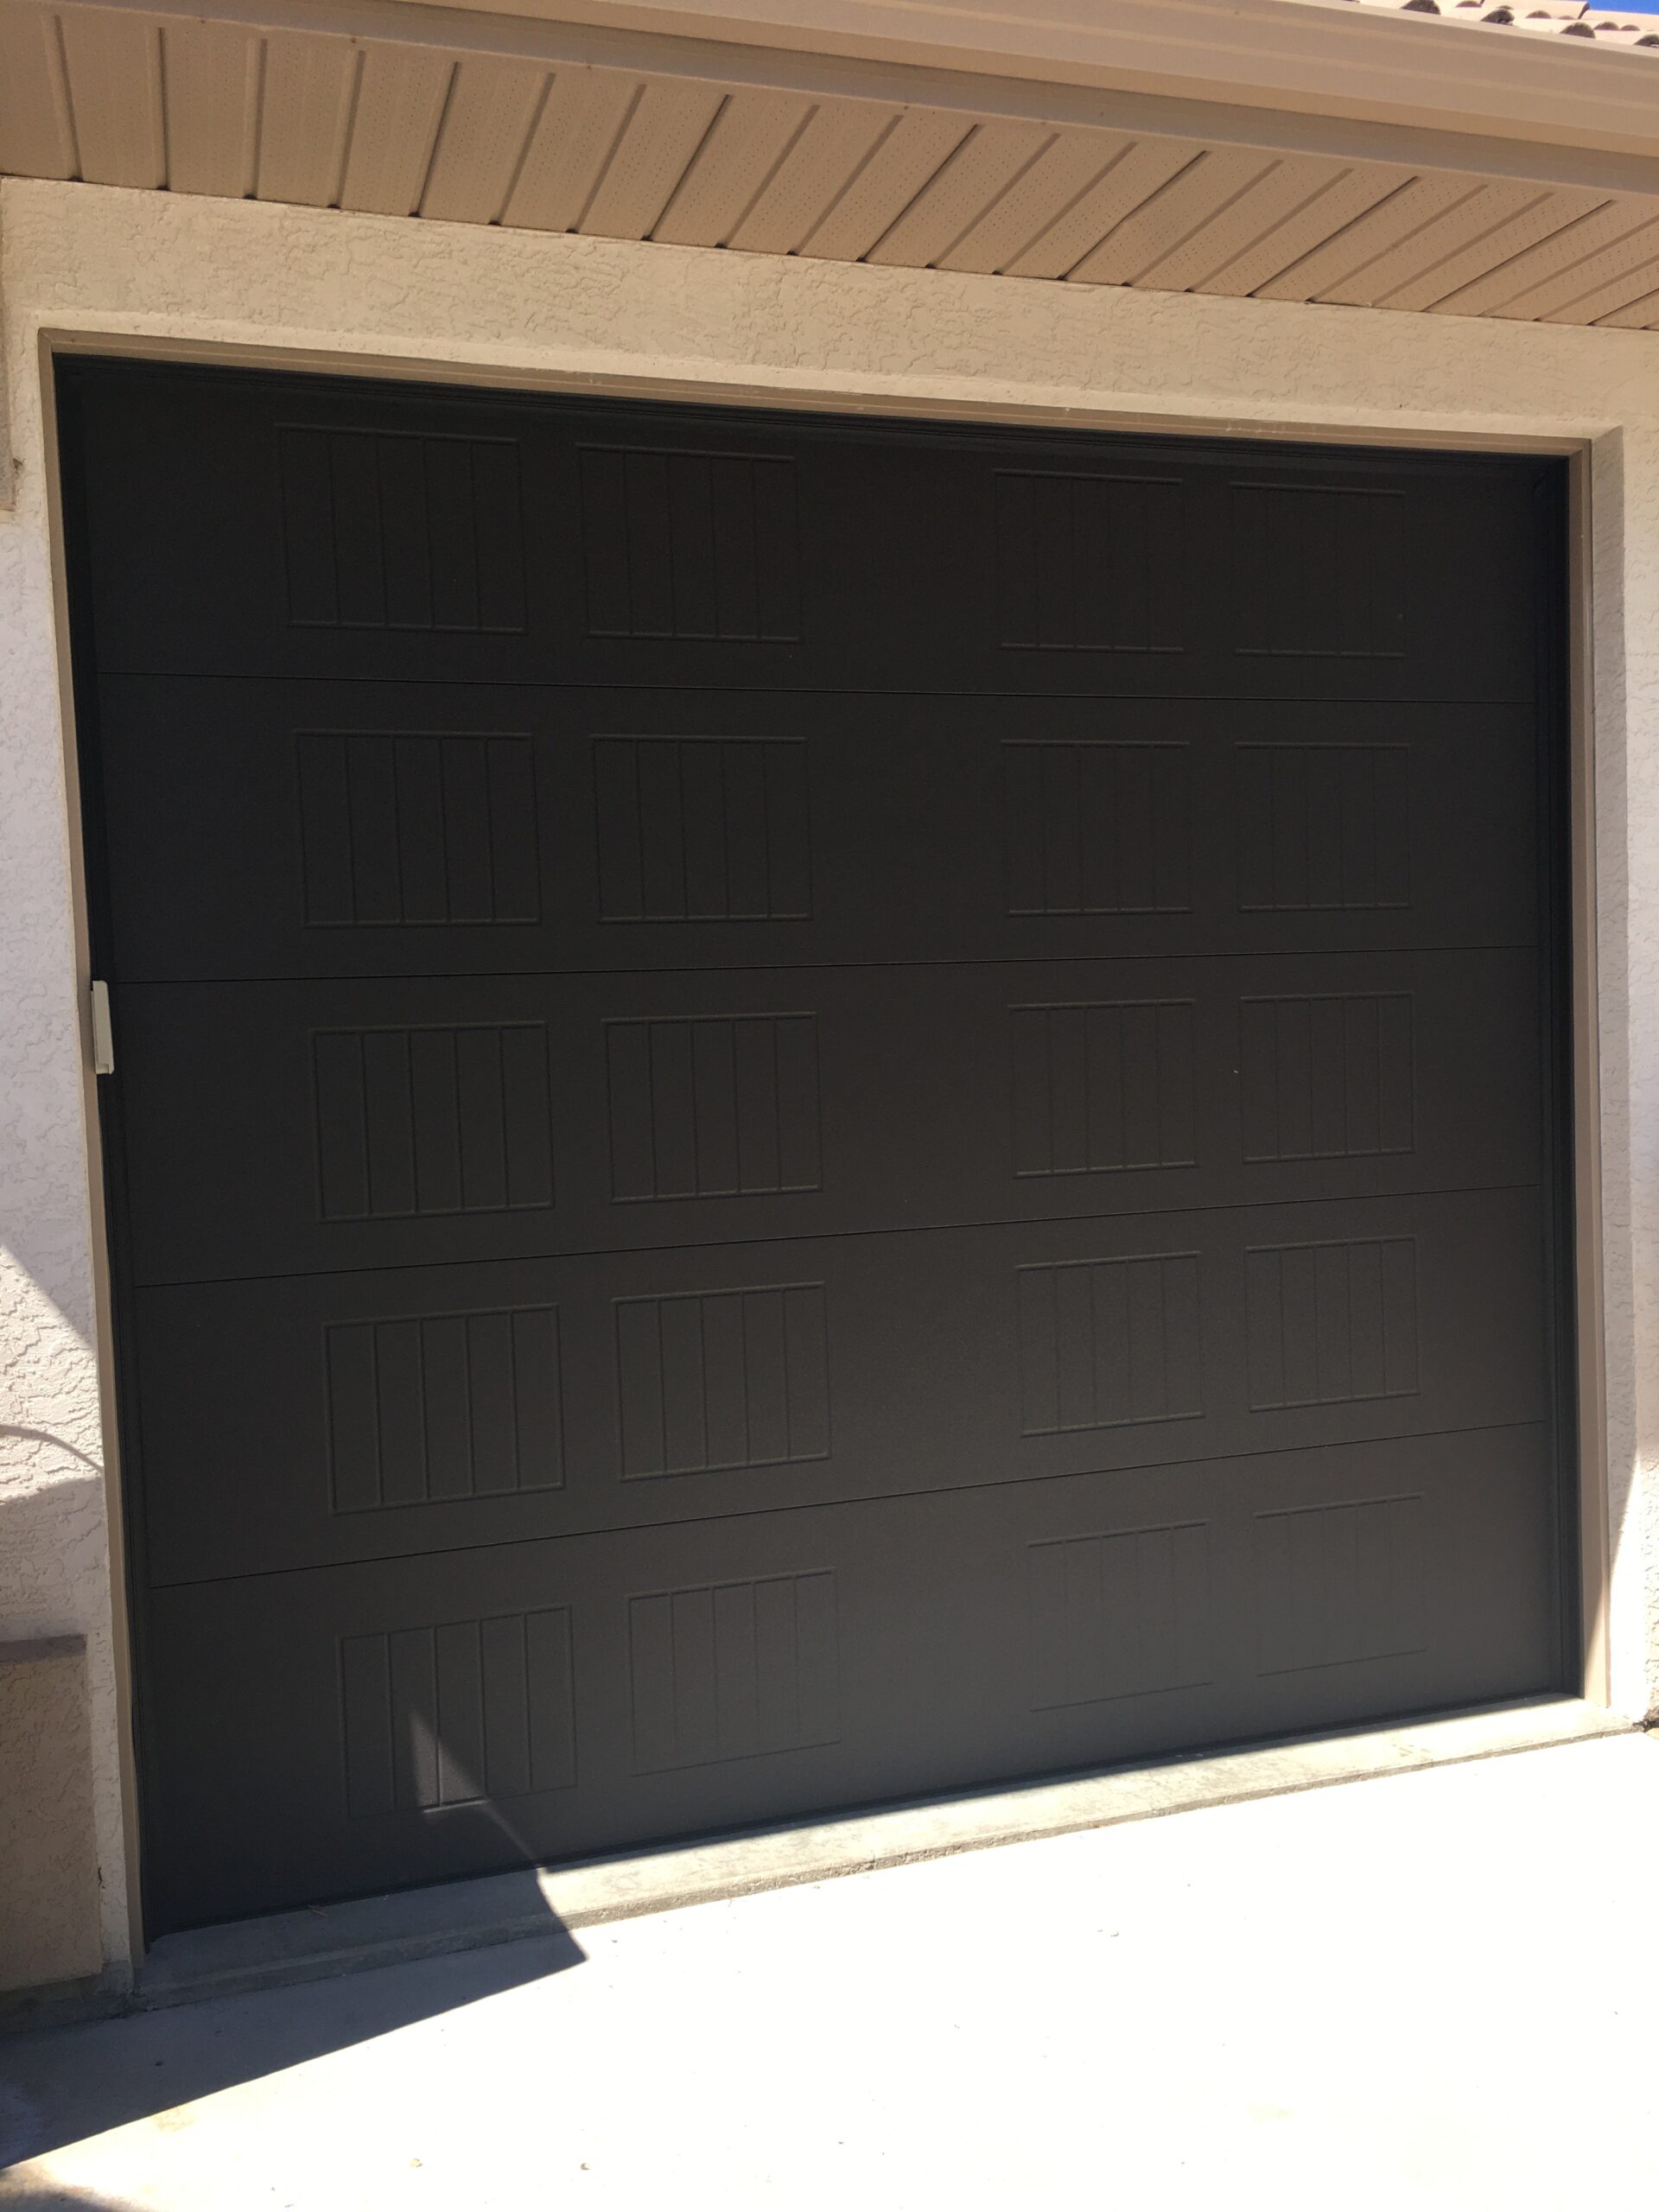 No window dark garage door